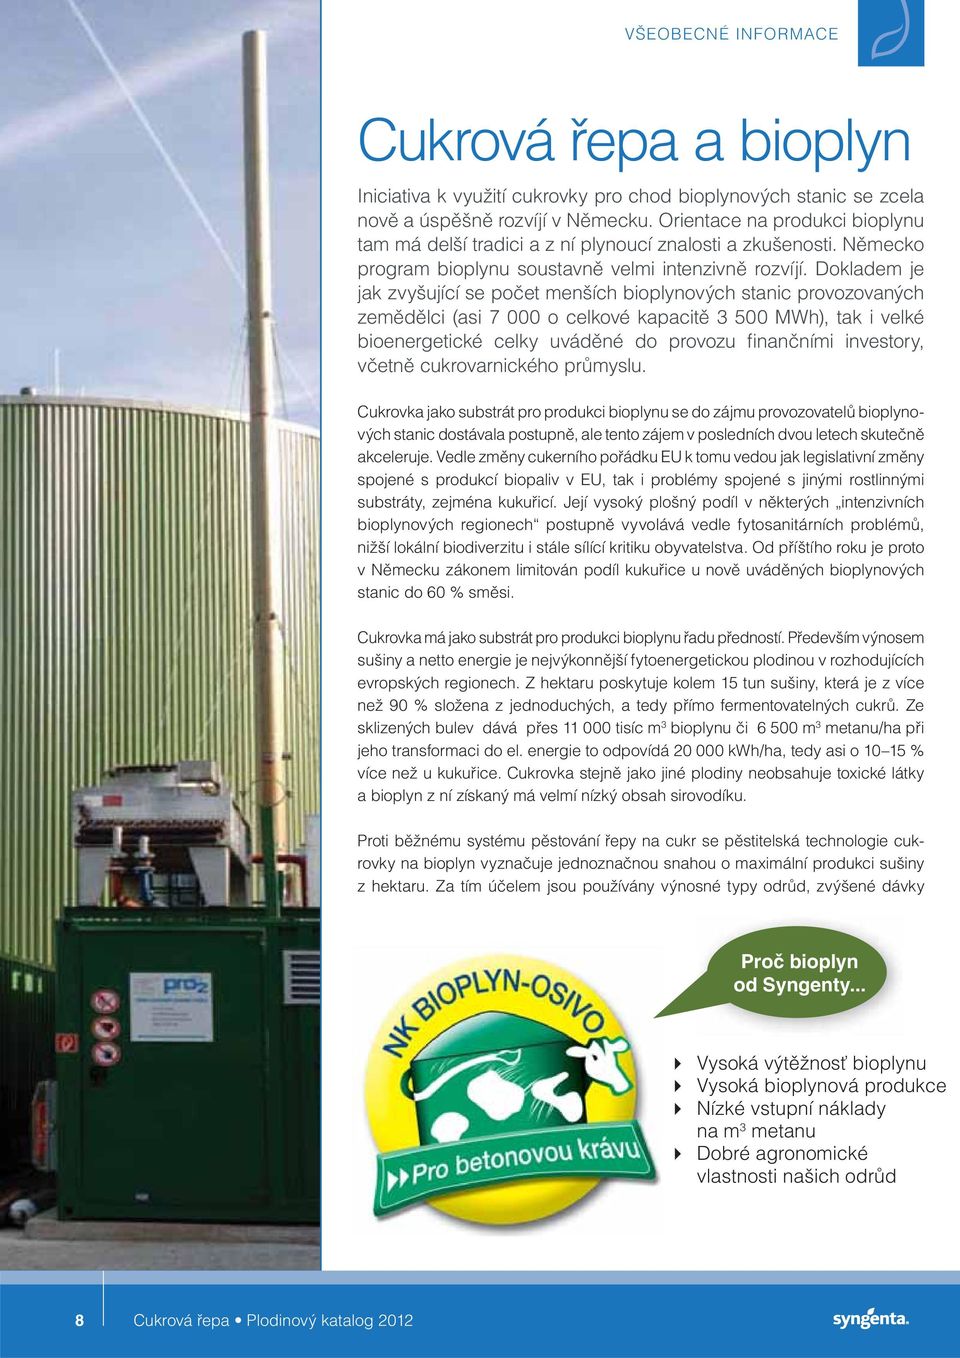 Dokladem je jak zvyšující se počet menších bioplynových stanic provozovaných zemědělci (asi 7 000 o celkové kapacitě 3 500 MWh), tak i velké bioenergetické celky uváděné do provozu finančními